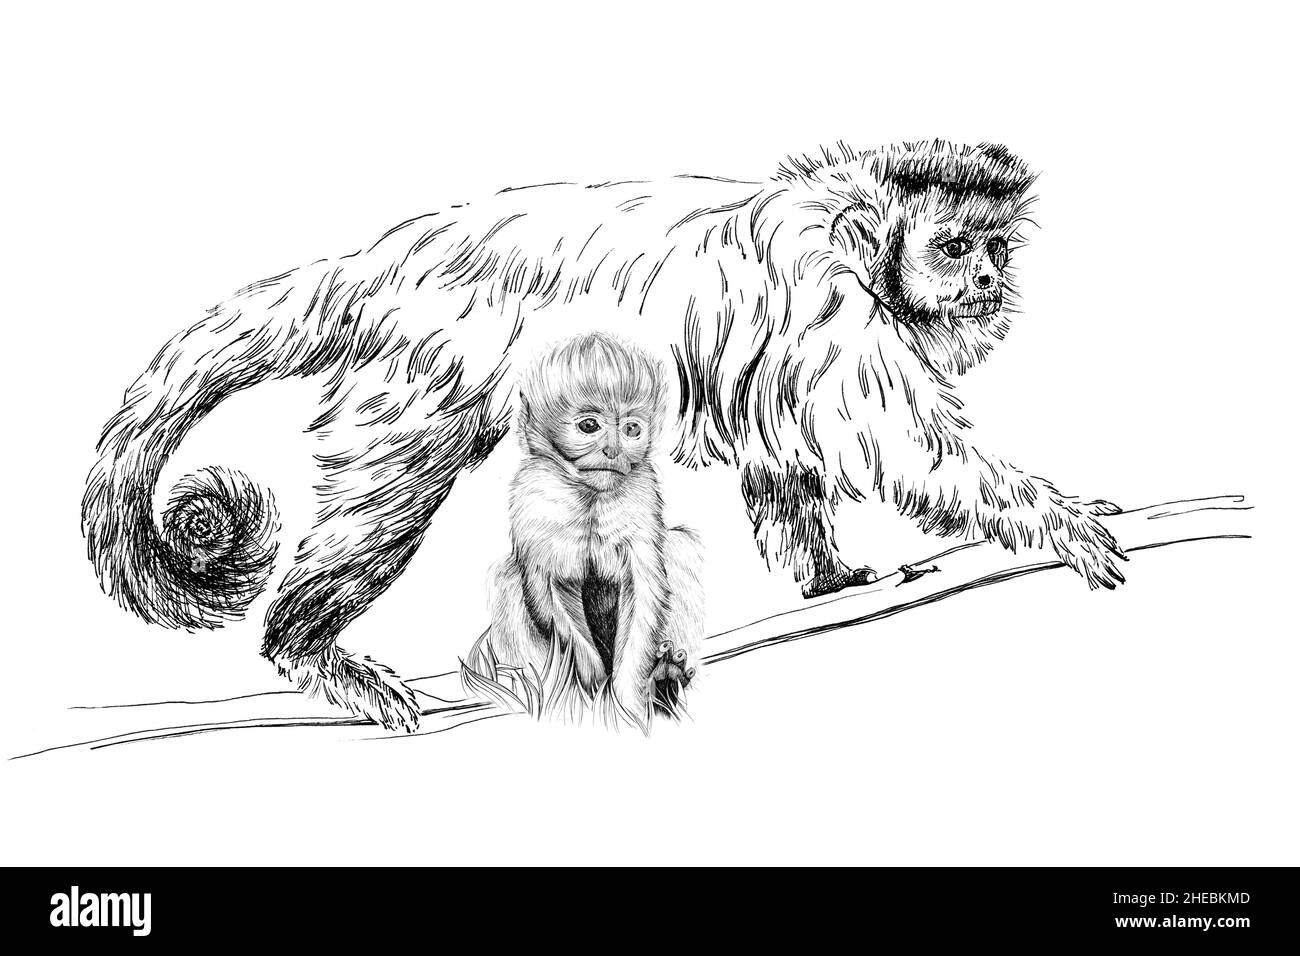 Handgezeichneter Baby- und adulter Affe, Skizzengrafiken monochrome Illustration auf weißem Hintergrund (Originale, keine Zeichnung) Stockfoto